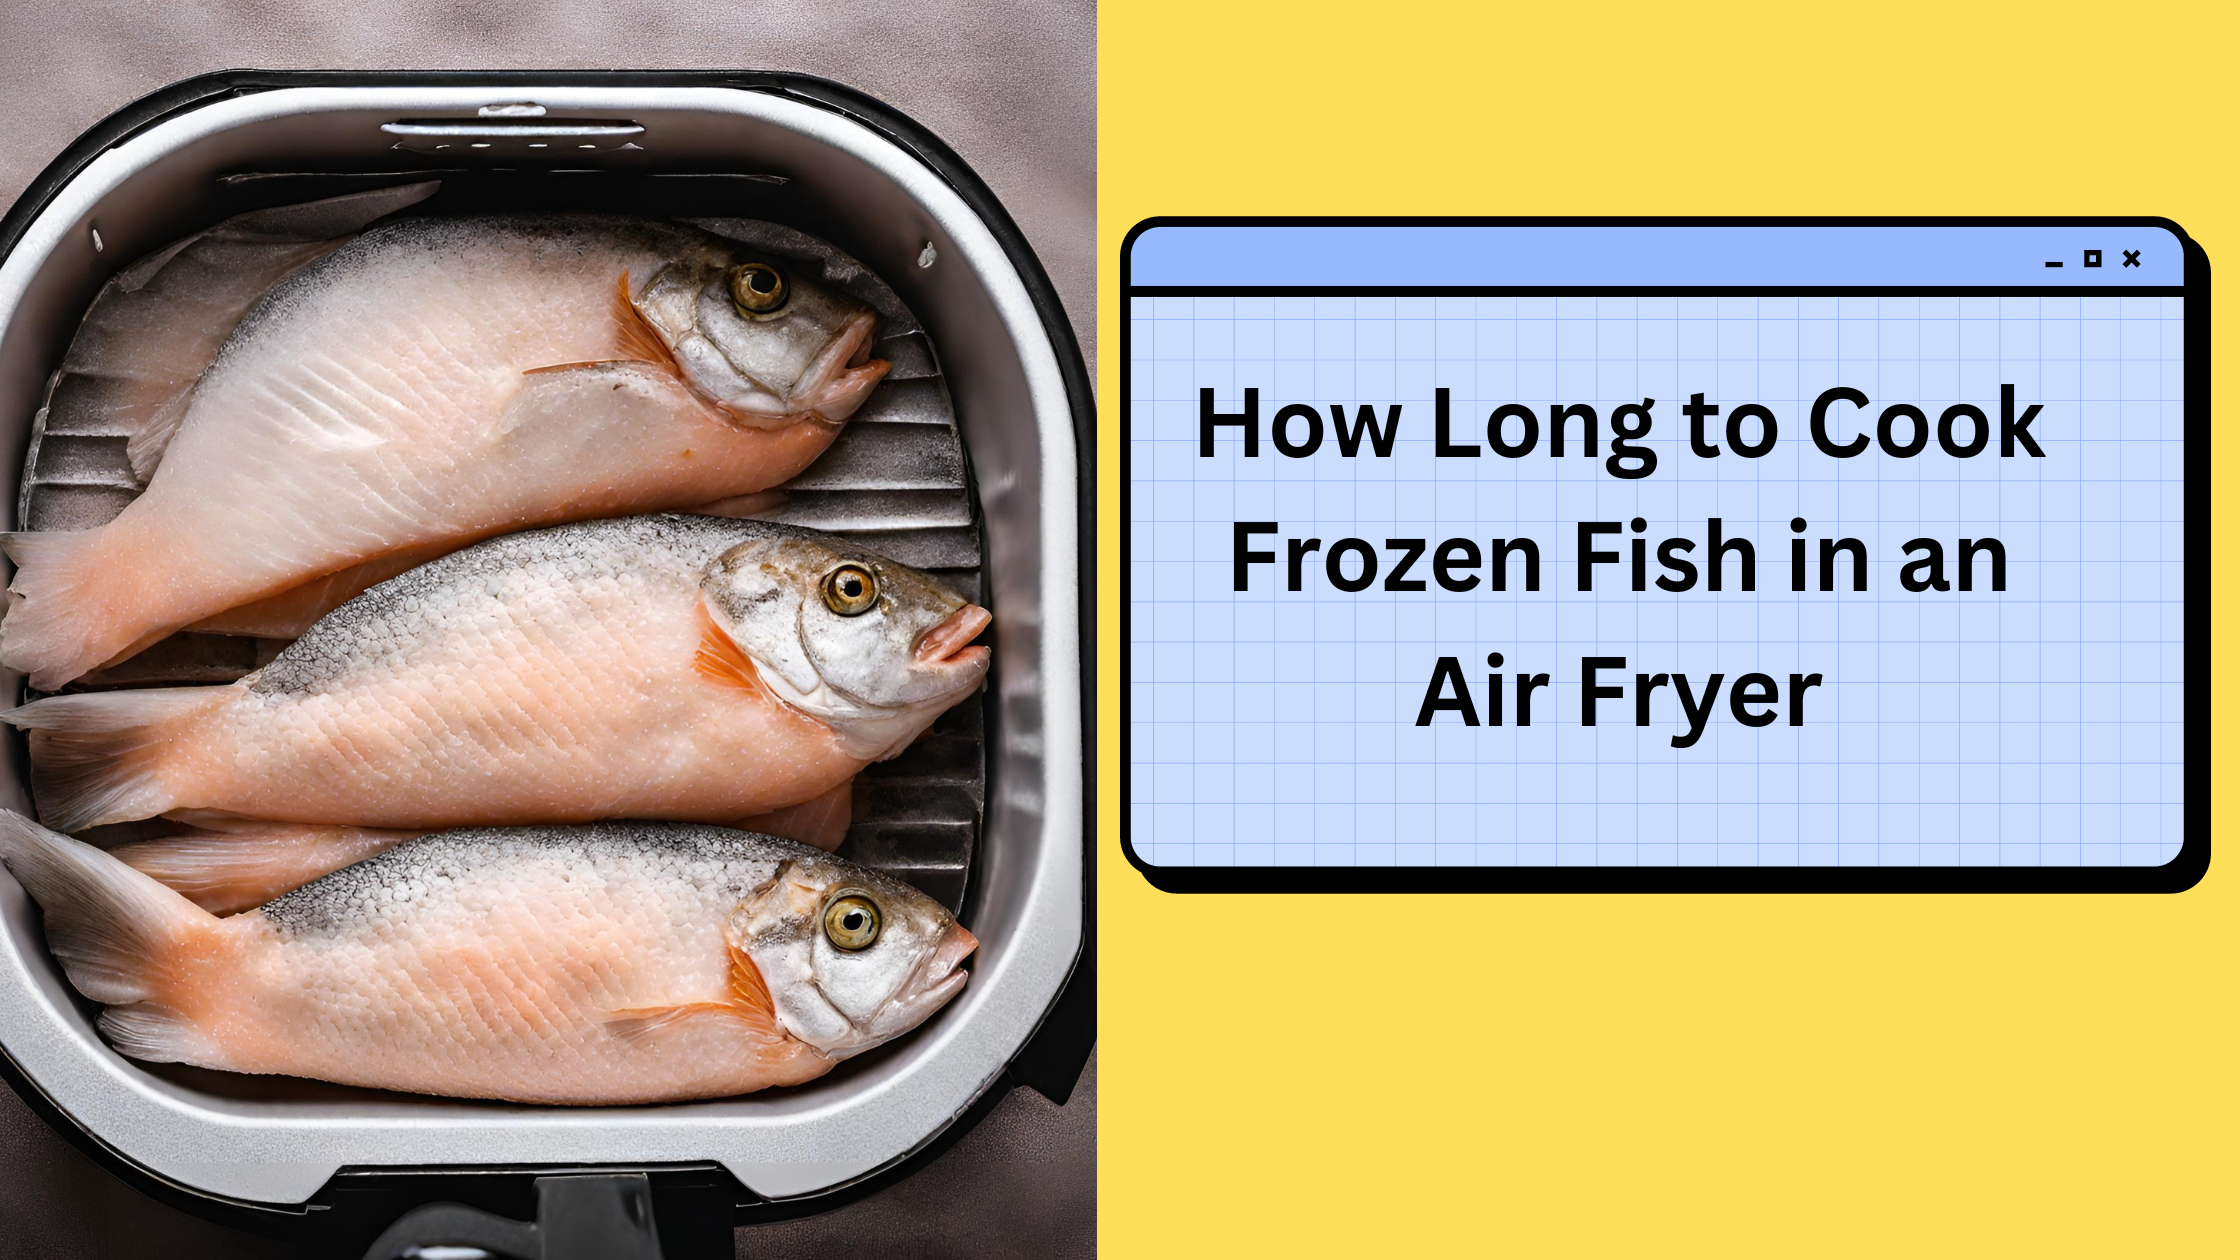 Frozen Fish in an air fryer